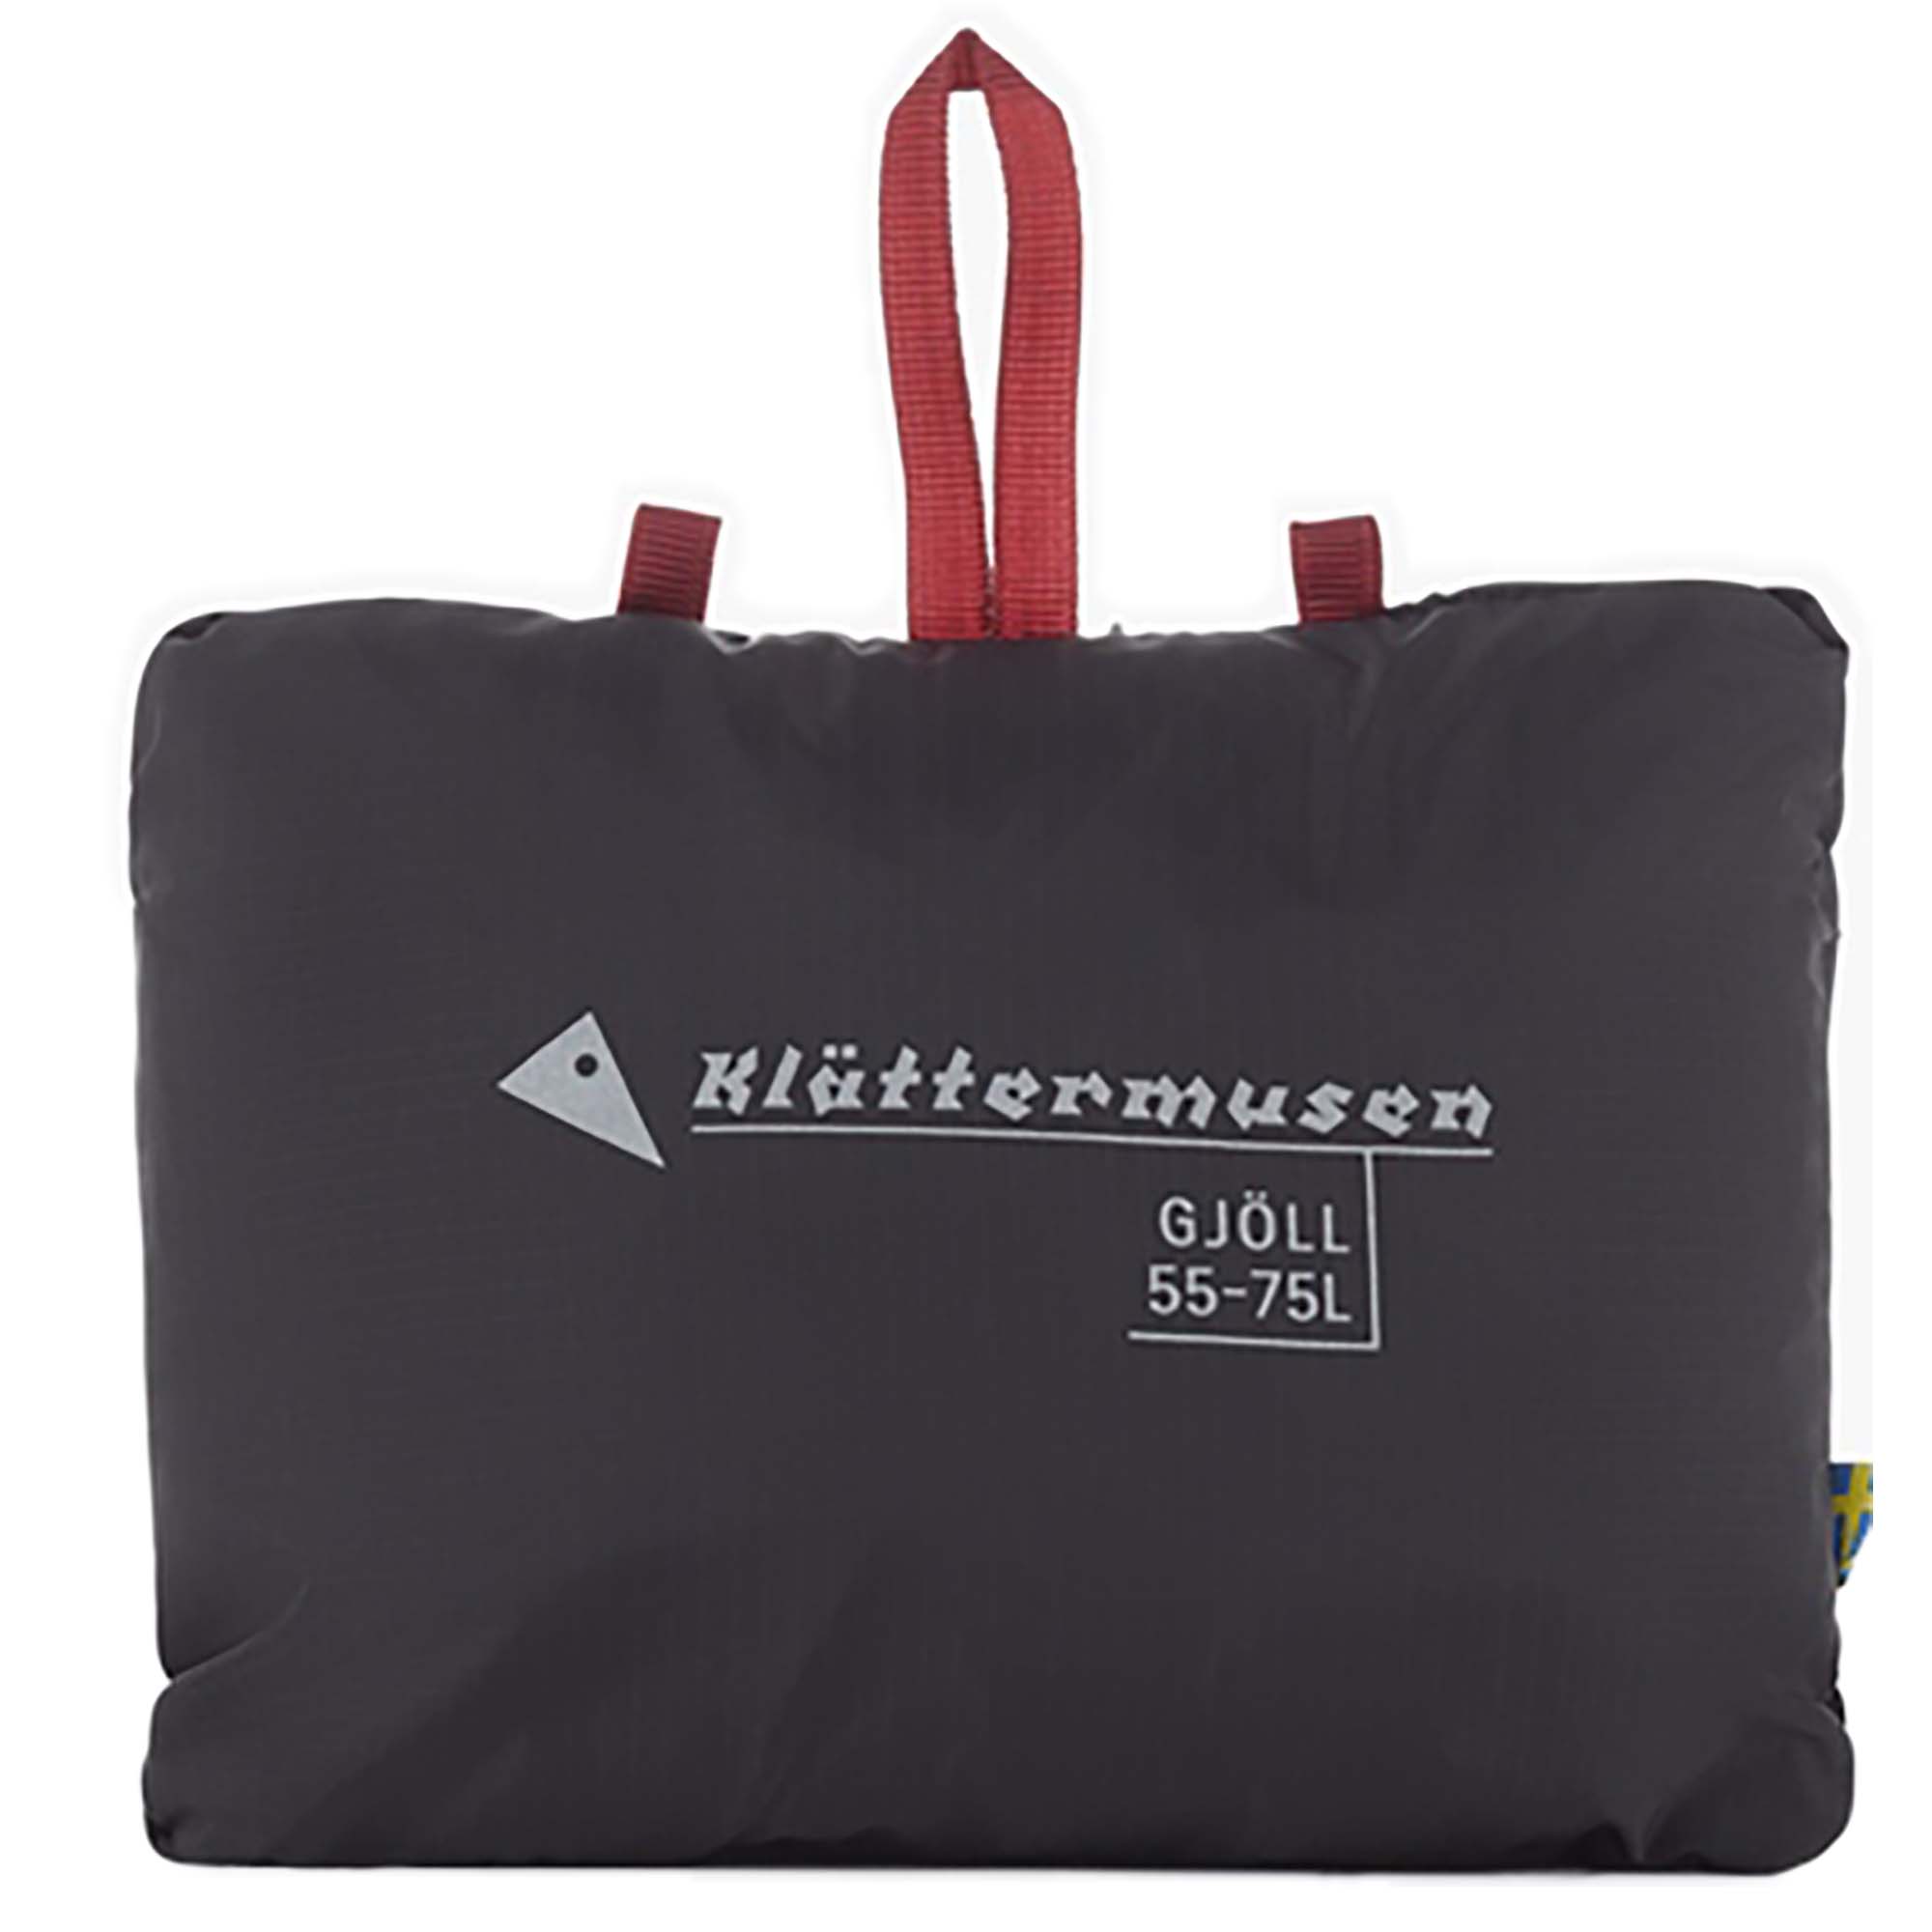 Klattermusen Gjöll 55-75 Litre Backpack Rain Cover